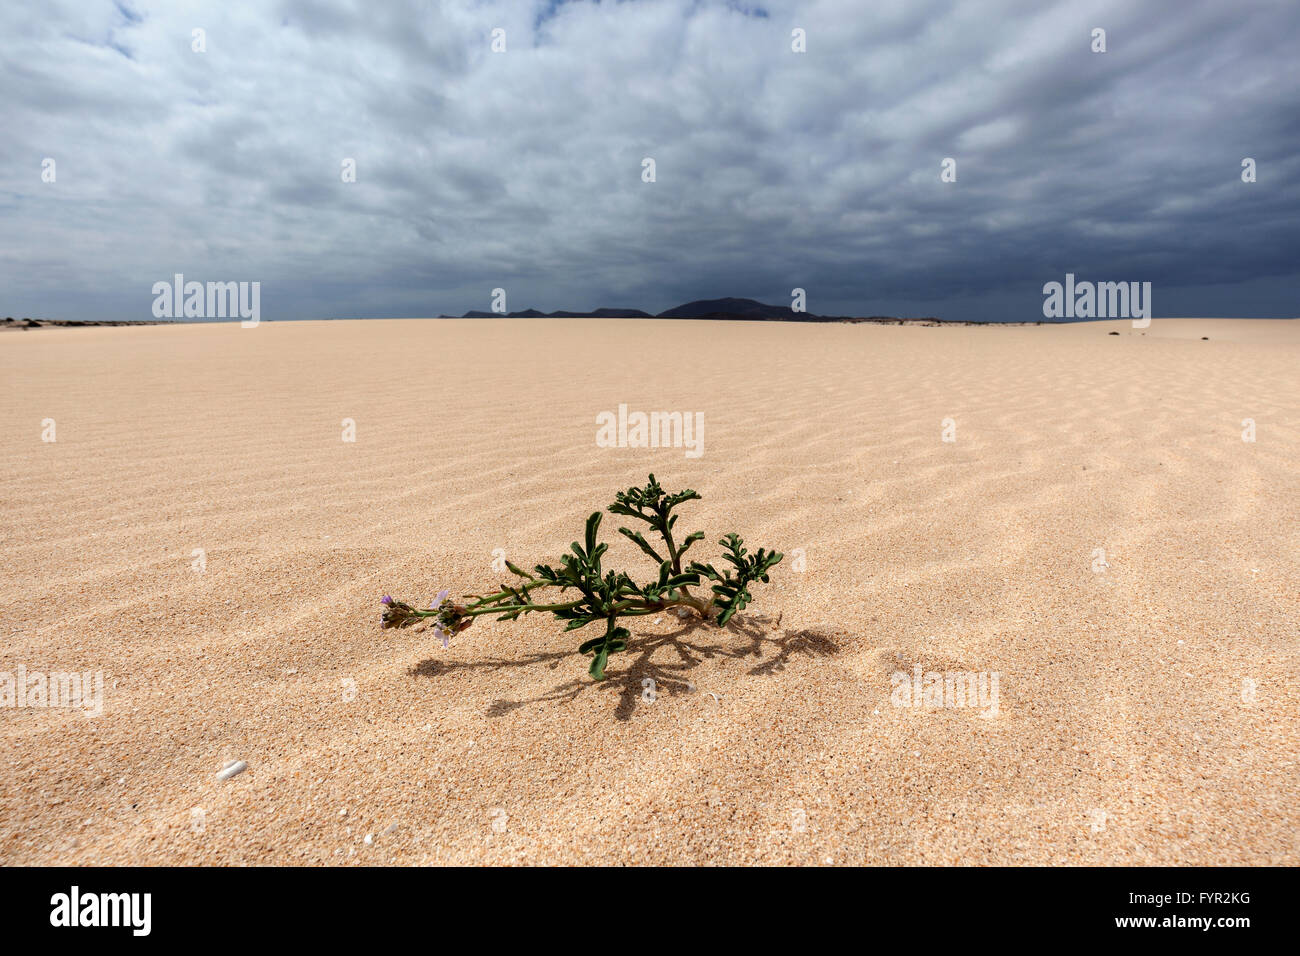 Plante en fleurs dans les dunes de sable, dunes errantes d'El Jable, Las Dunas de Corralejo, Fuerteventura, parc naturel de Corralejo Banque D'Images